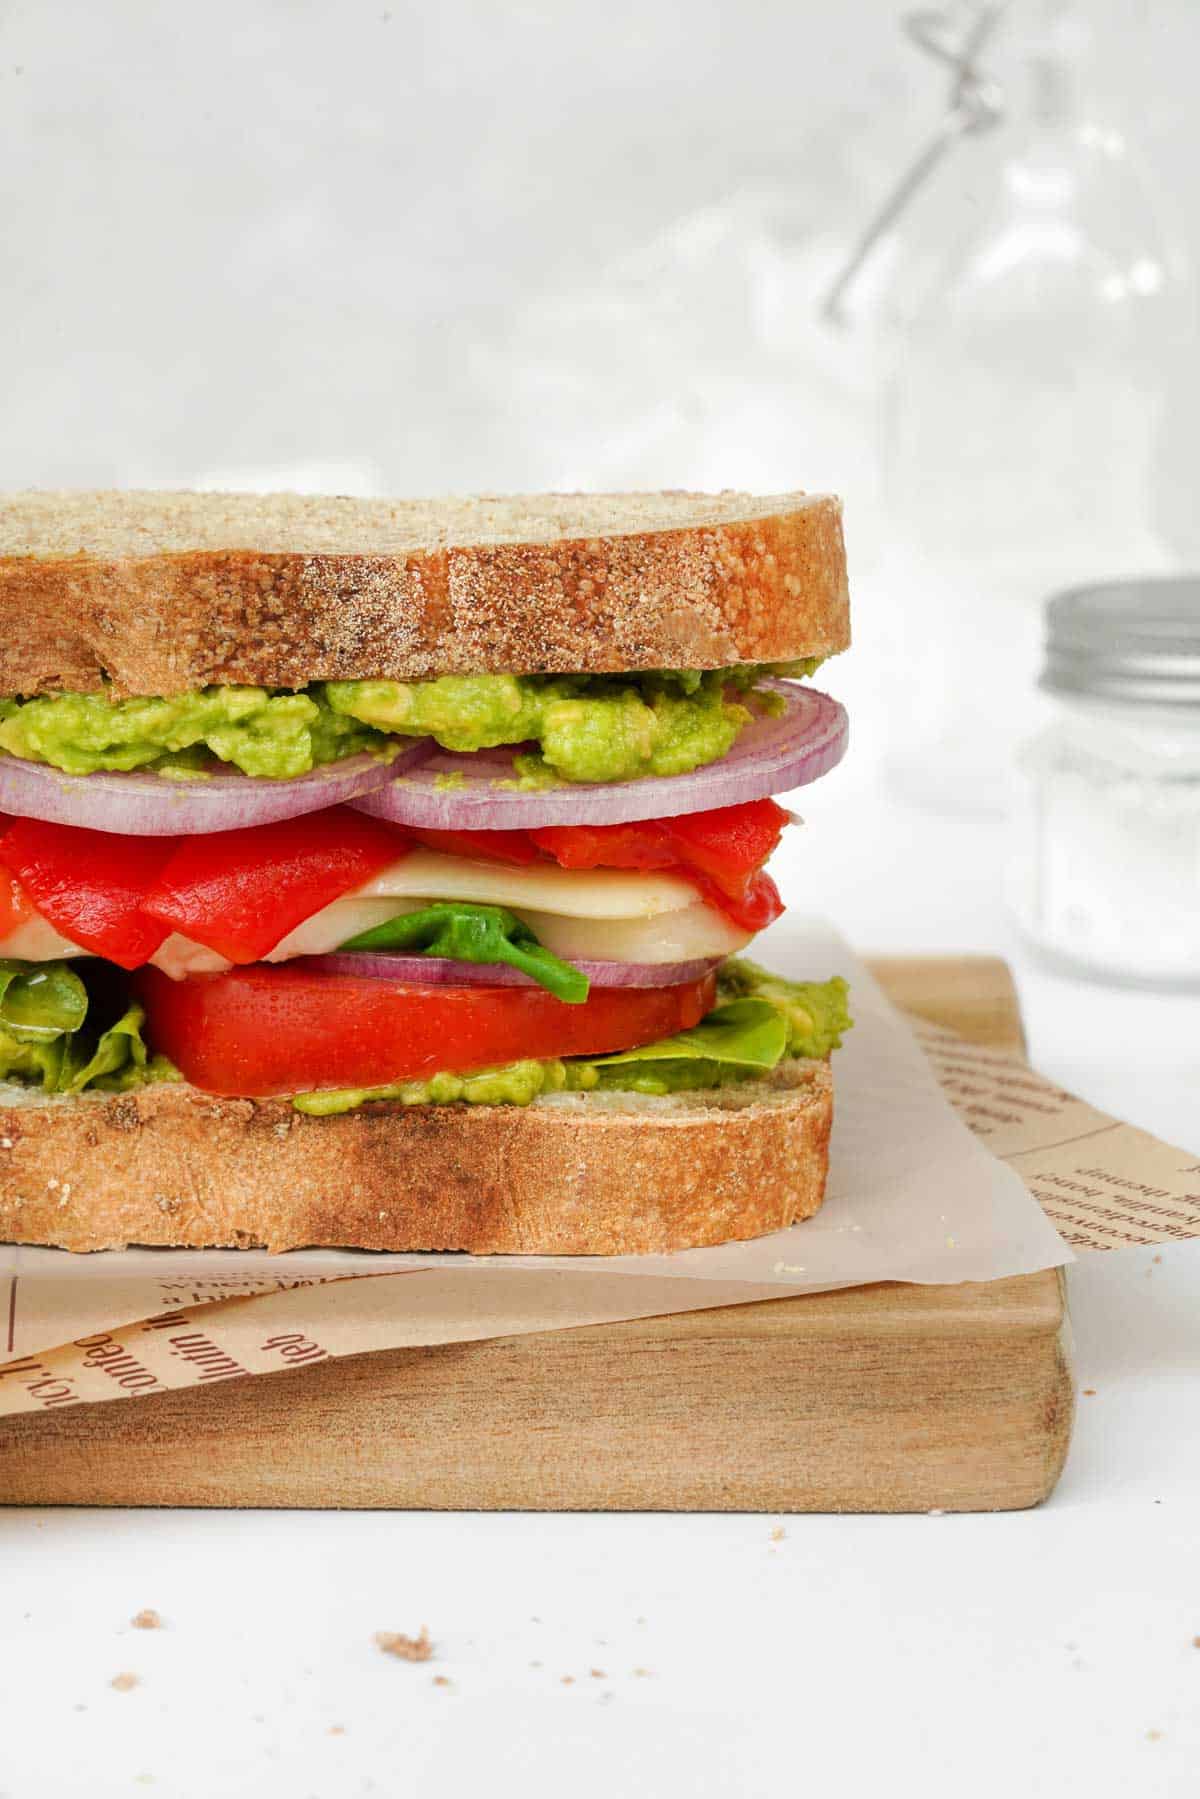 A vegetarian, Mediterranean sandwich is sitting on a cutting board.